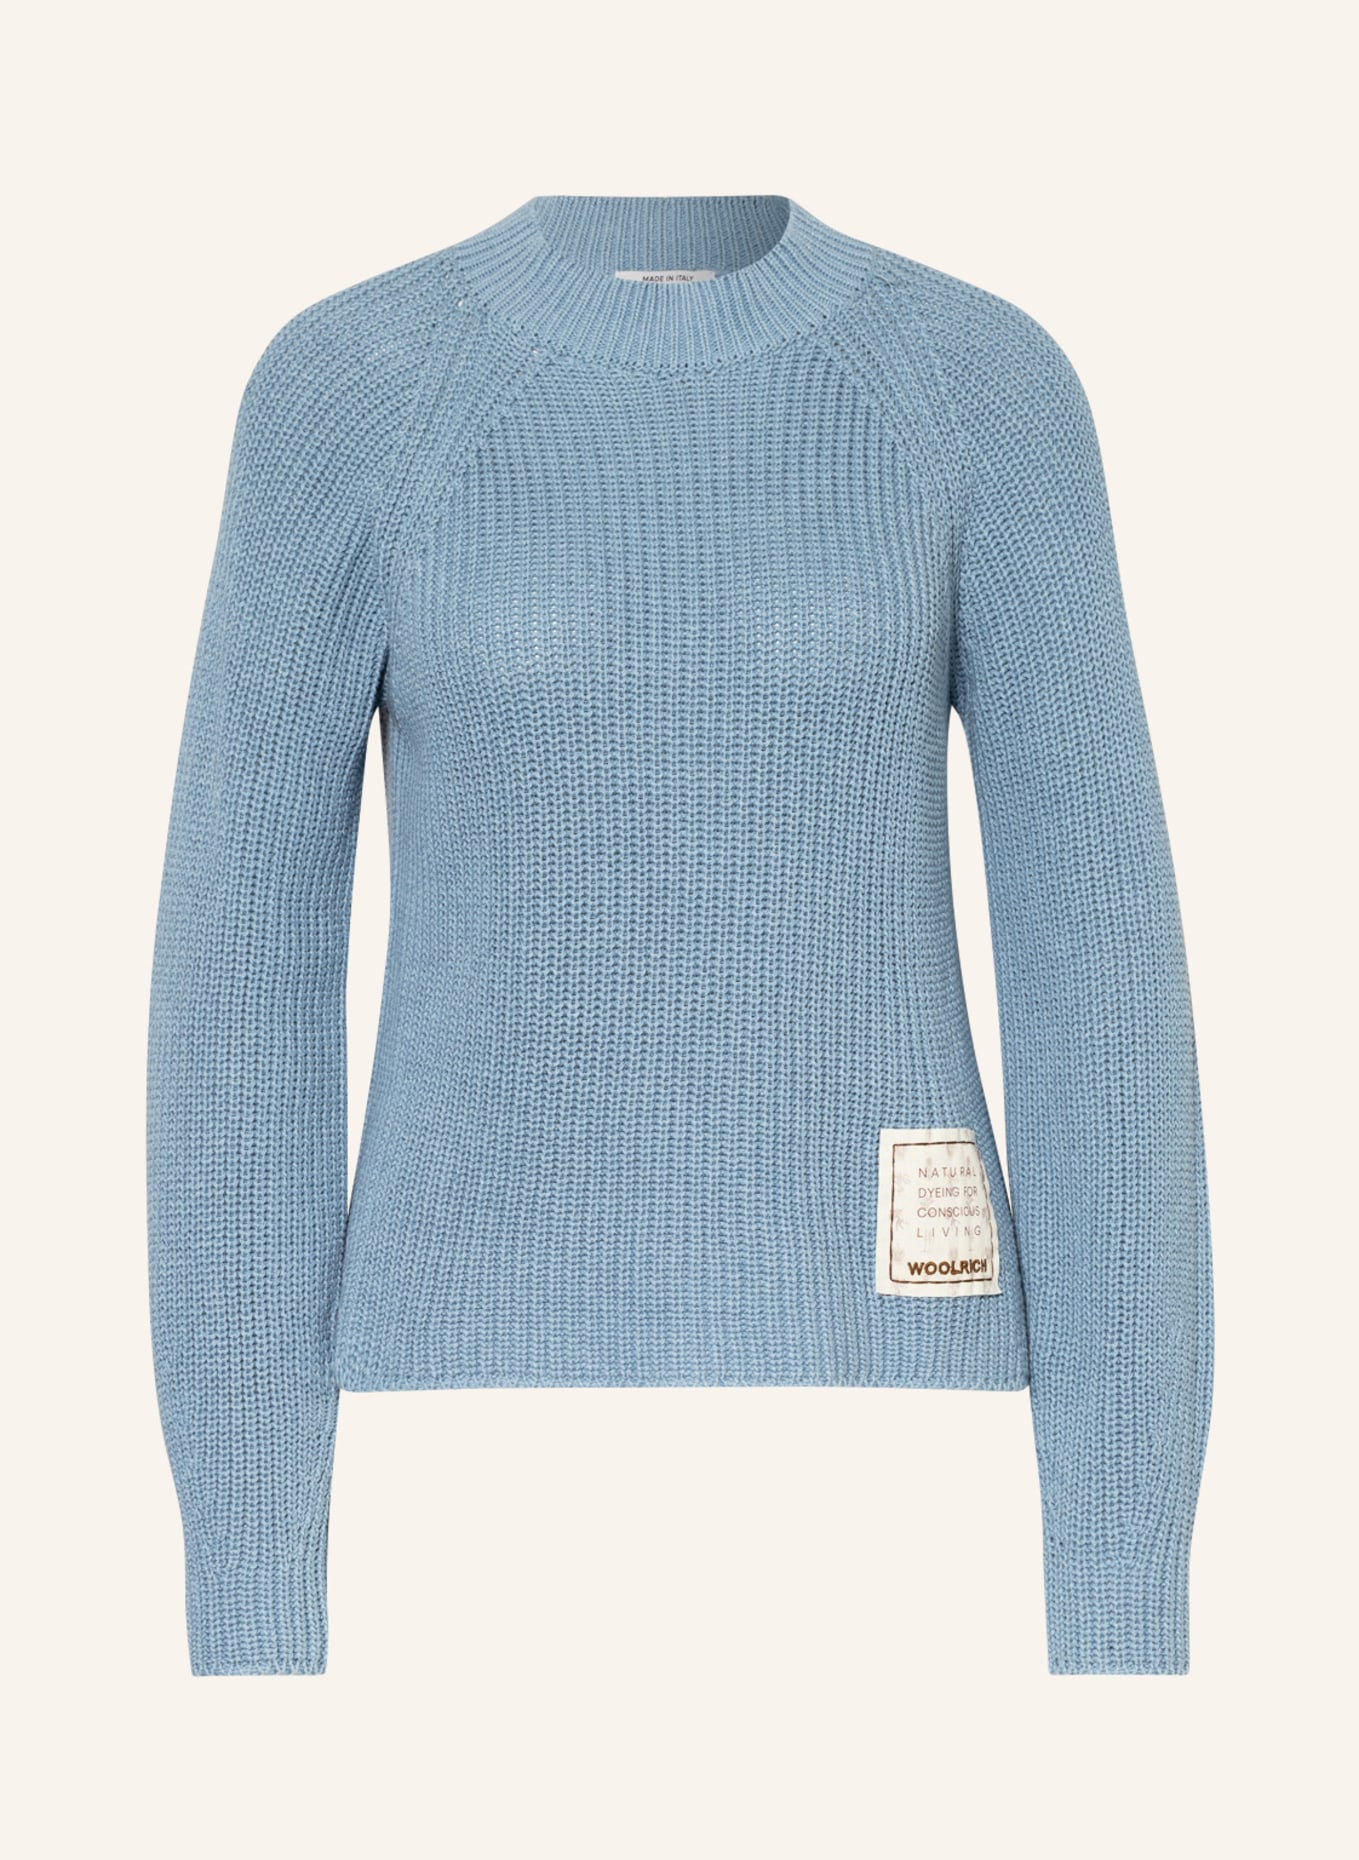 WOOLRICH Pullover, Farbe: BLAUGRAU (Bild 1)